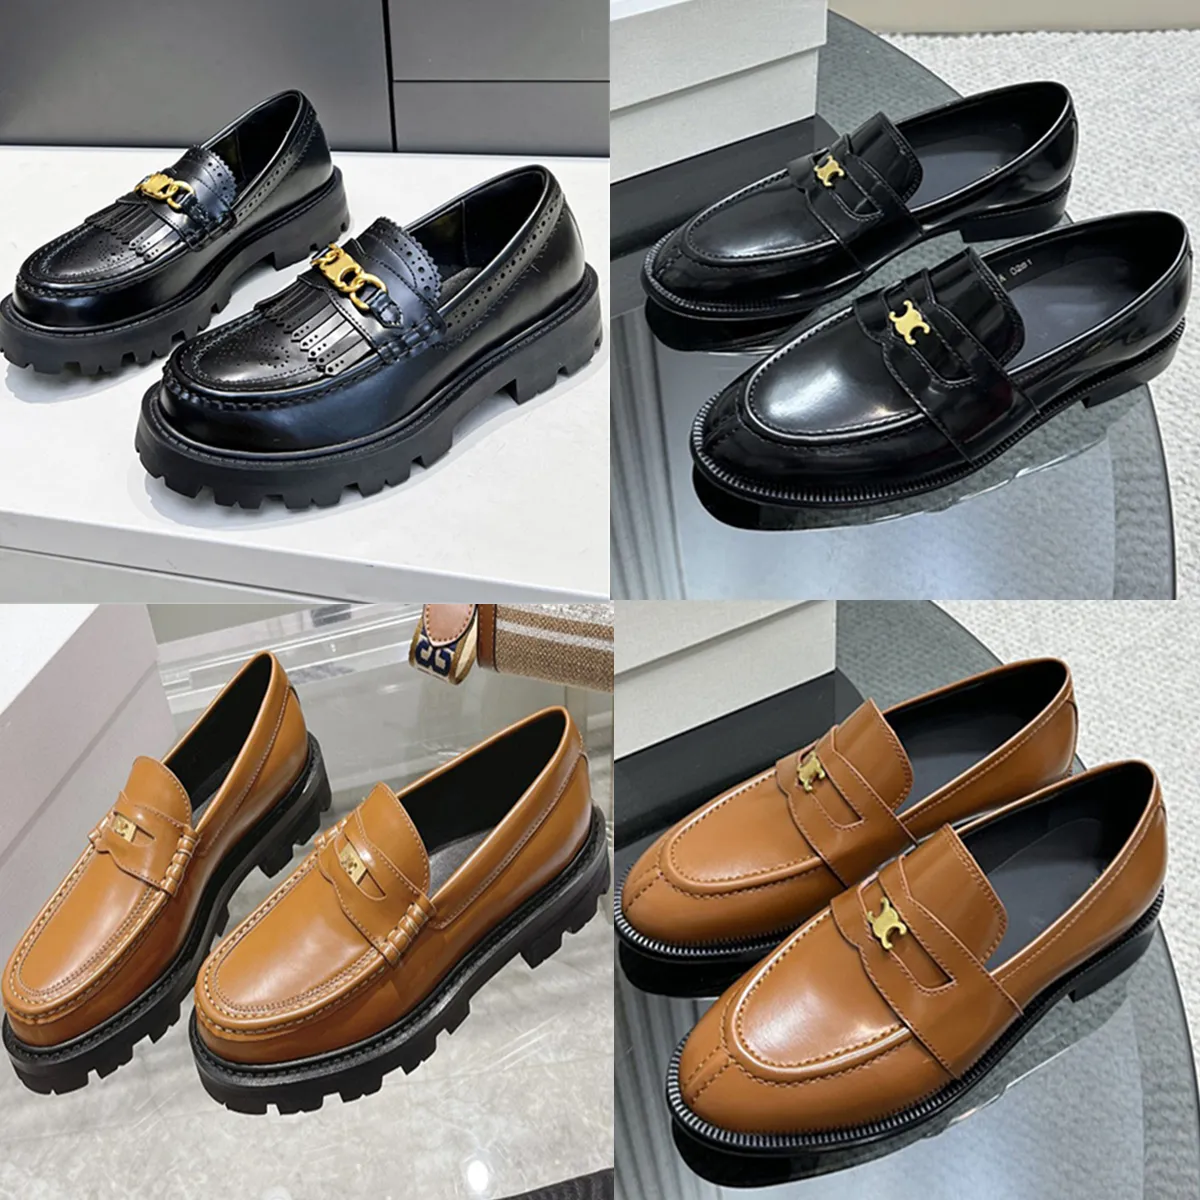 Schoenen gepolijste plaat-formaat koehide metaal chaussure comfortabele loafers sandalen beroemde designer vrouwen 17531